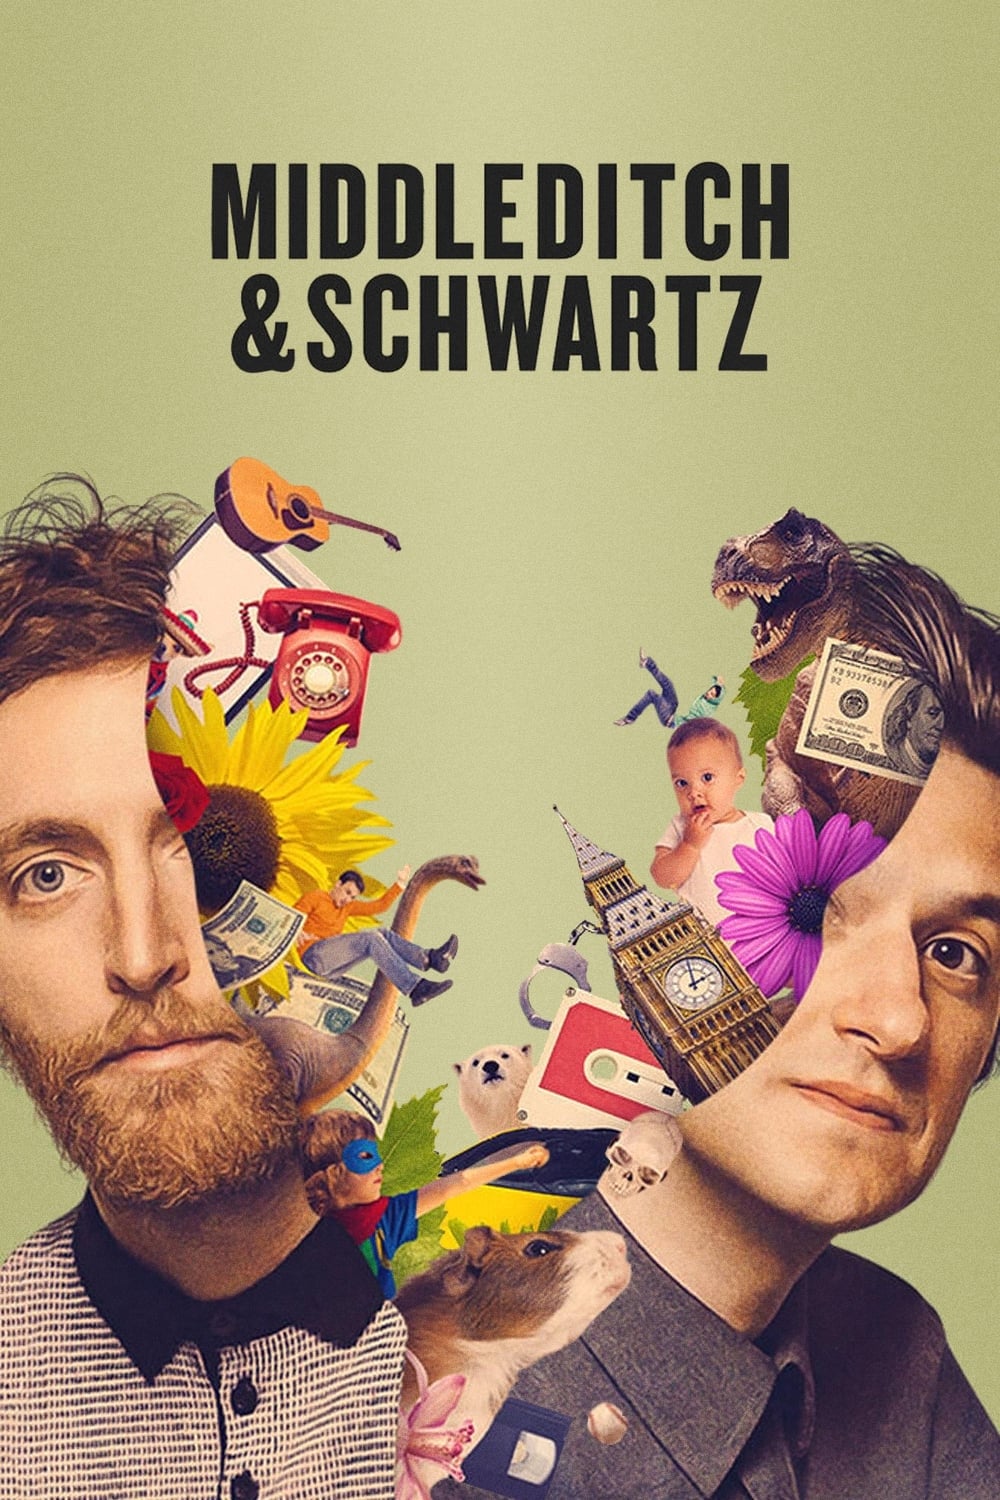 Les saisons de Middleditch & Schwartz sont-elles disponibles sur Netflix ou autre ?